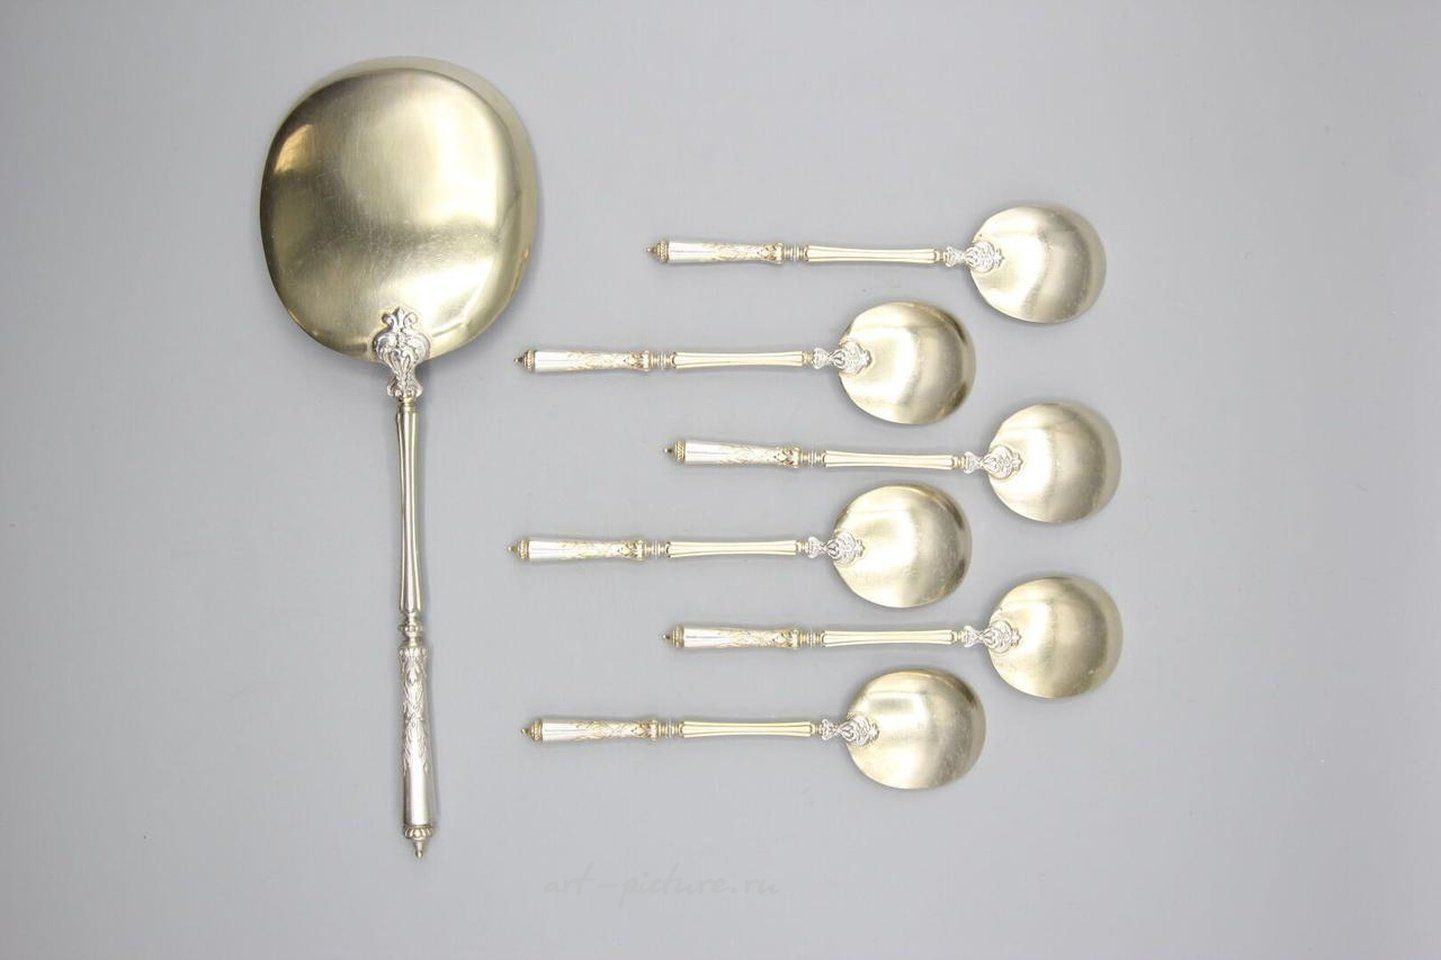 Русское серебро , Сервиз для льда из серебра и вермей в русском стиле с витиеватыми ложечками.